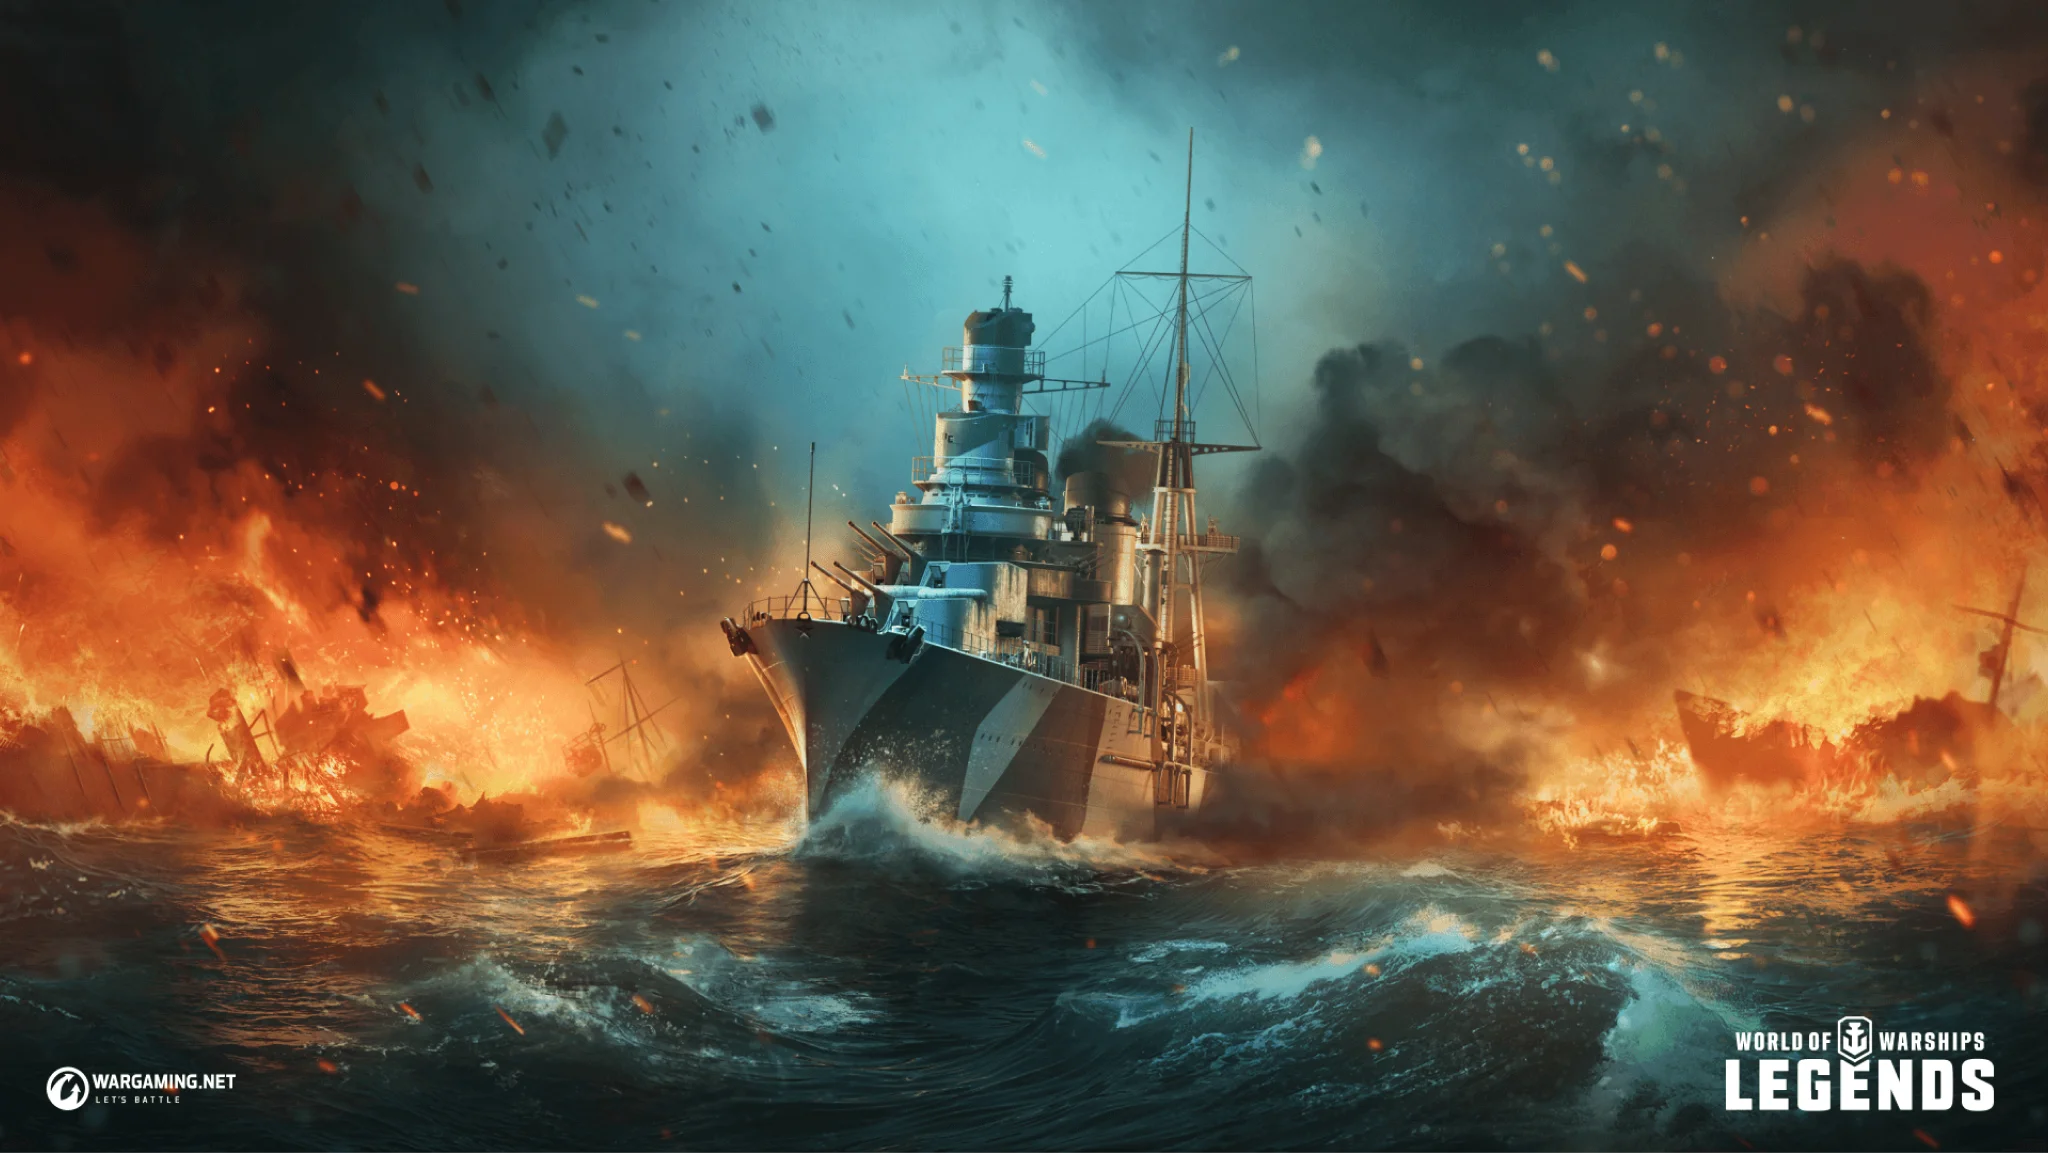 Background image of warship